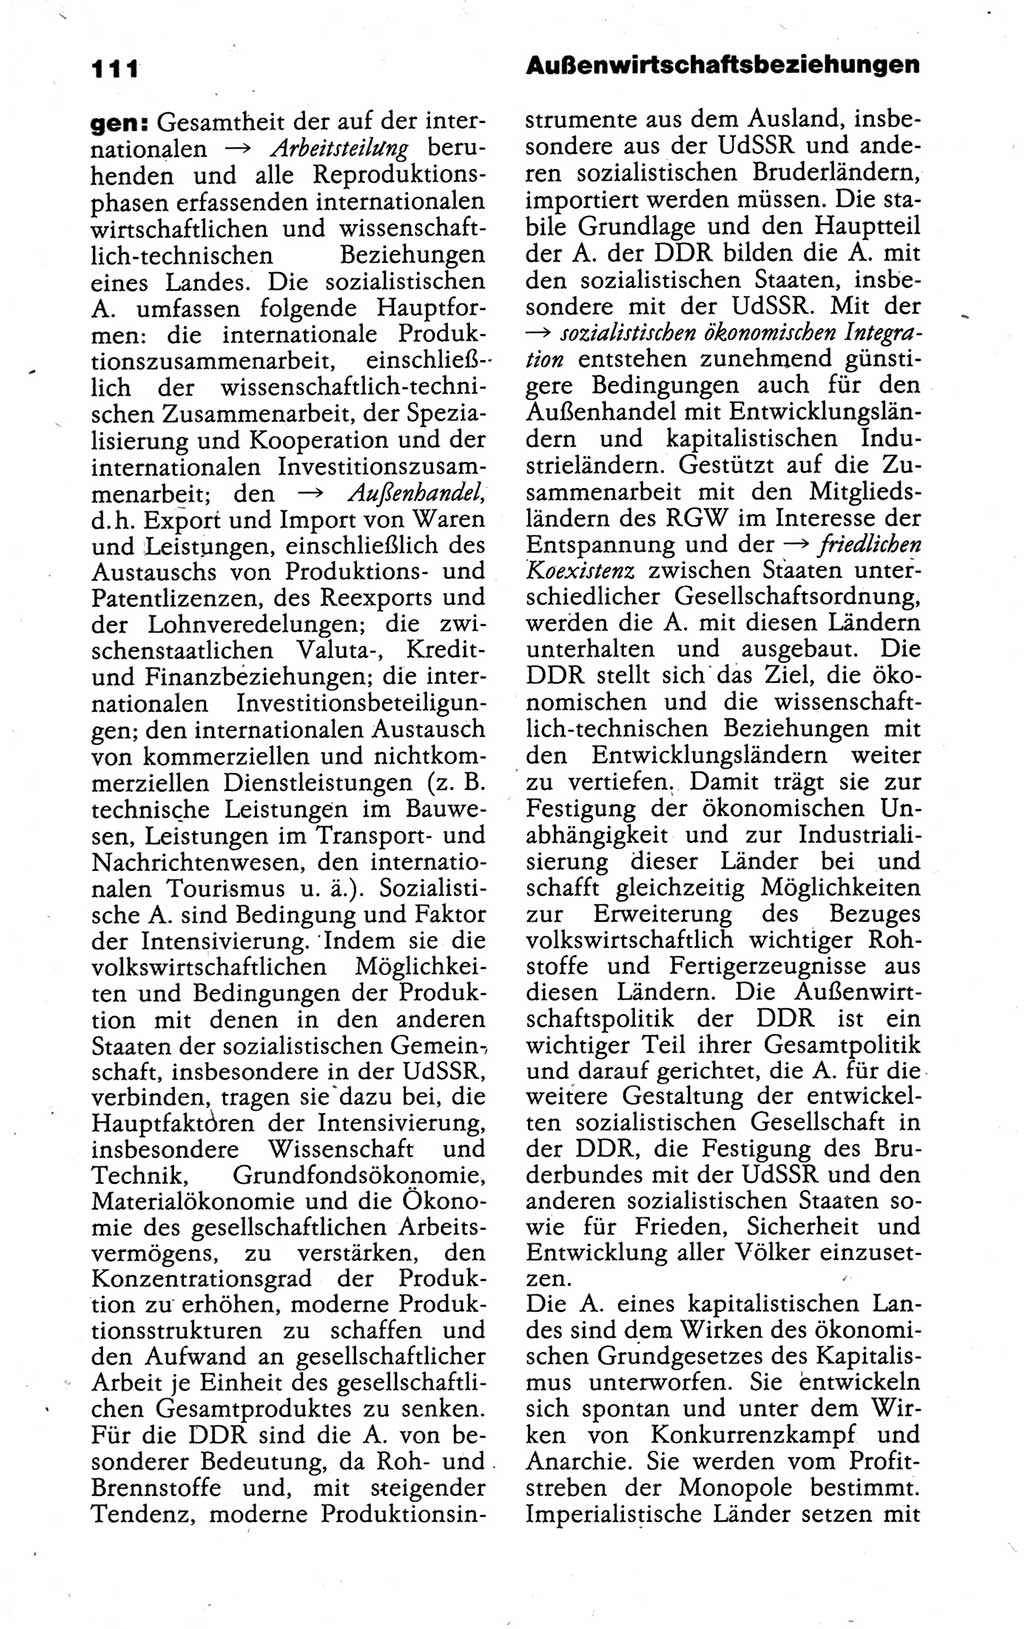 Kleines politisches Wörterbuch [Deutsche Demokratische Republik (DDR)] 1988, Seite 111 (Kl. pol. Wb. DDR 1988, S. 111)